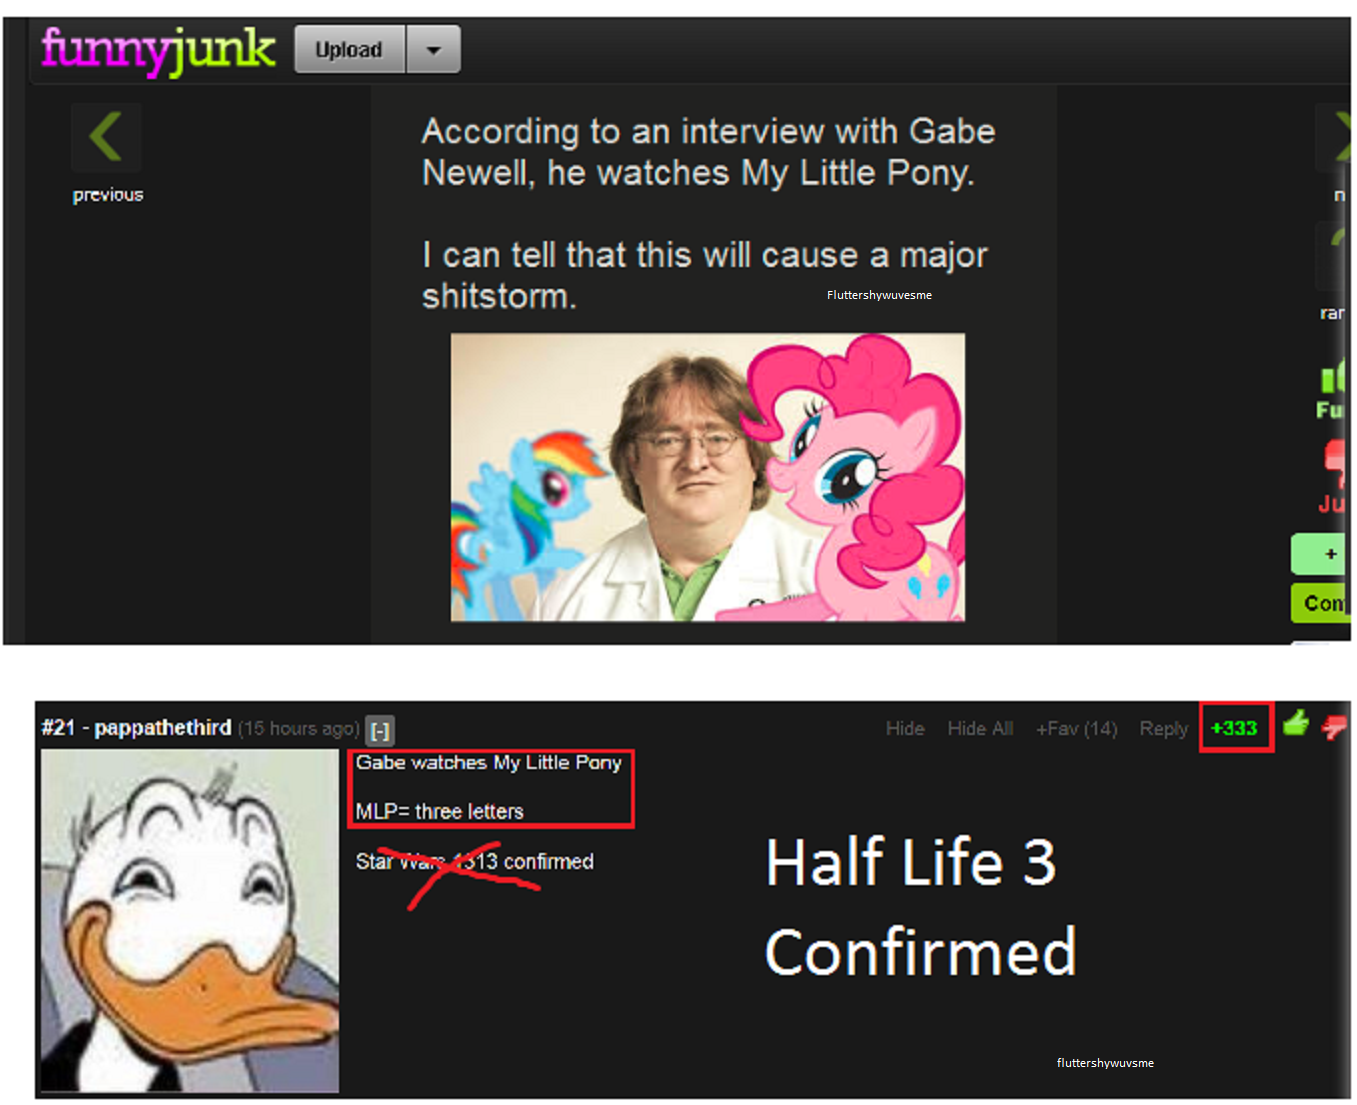 half life 3 confirmed joke